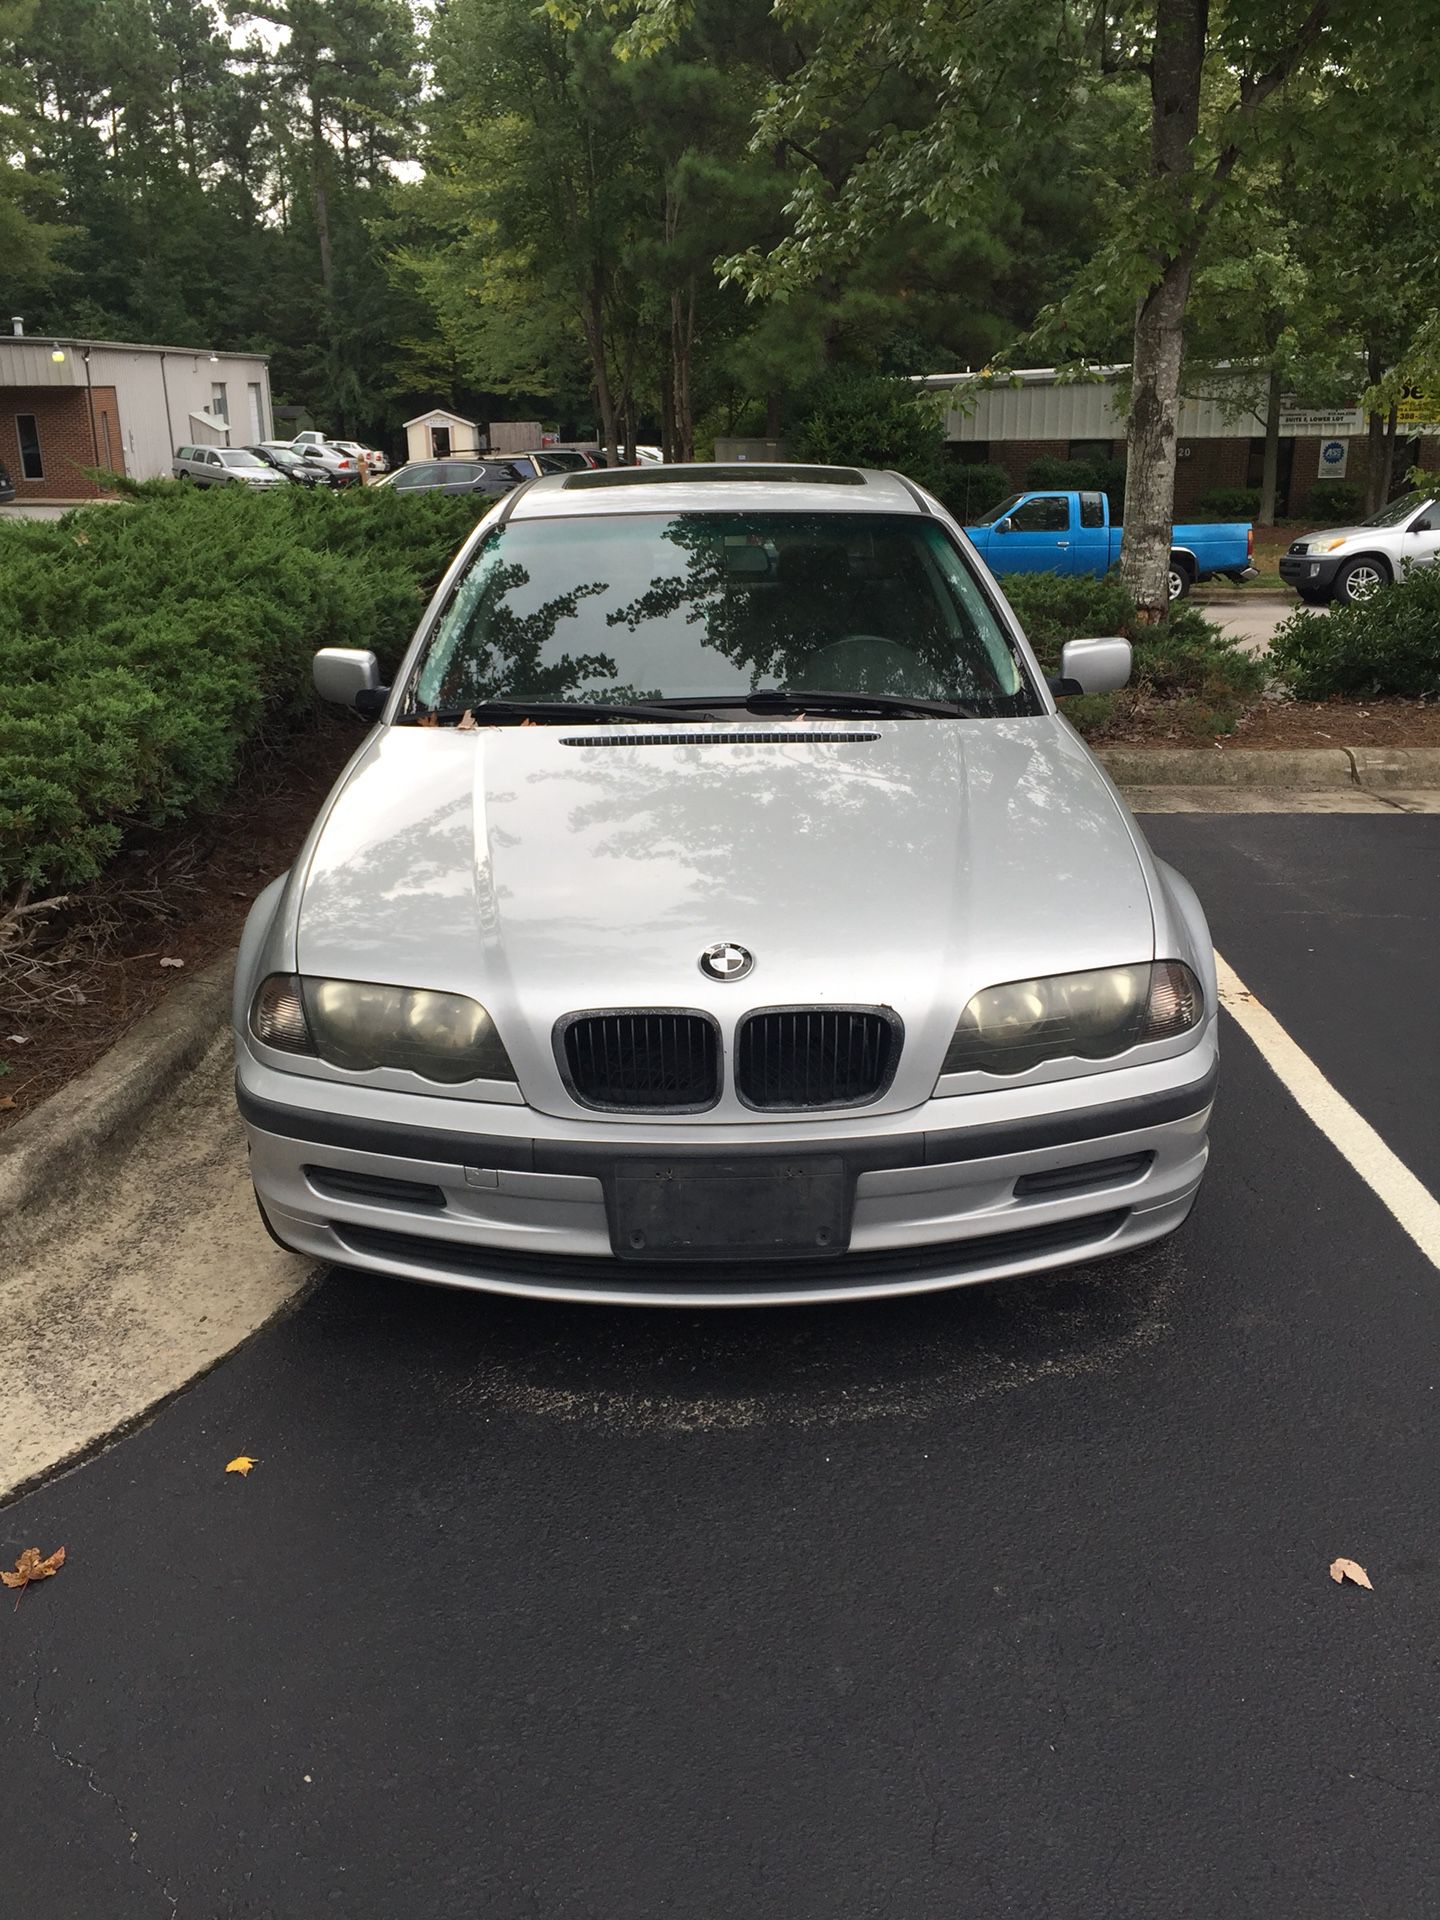 2001 325i BMW